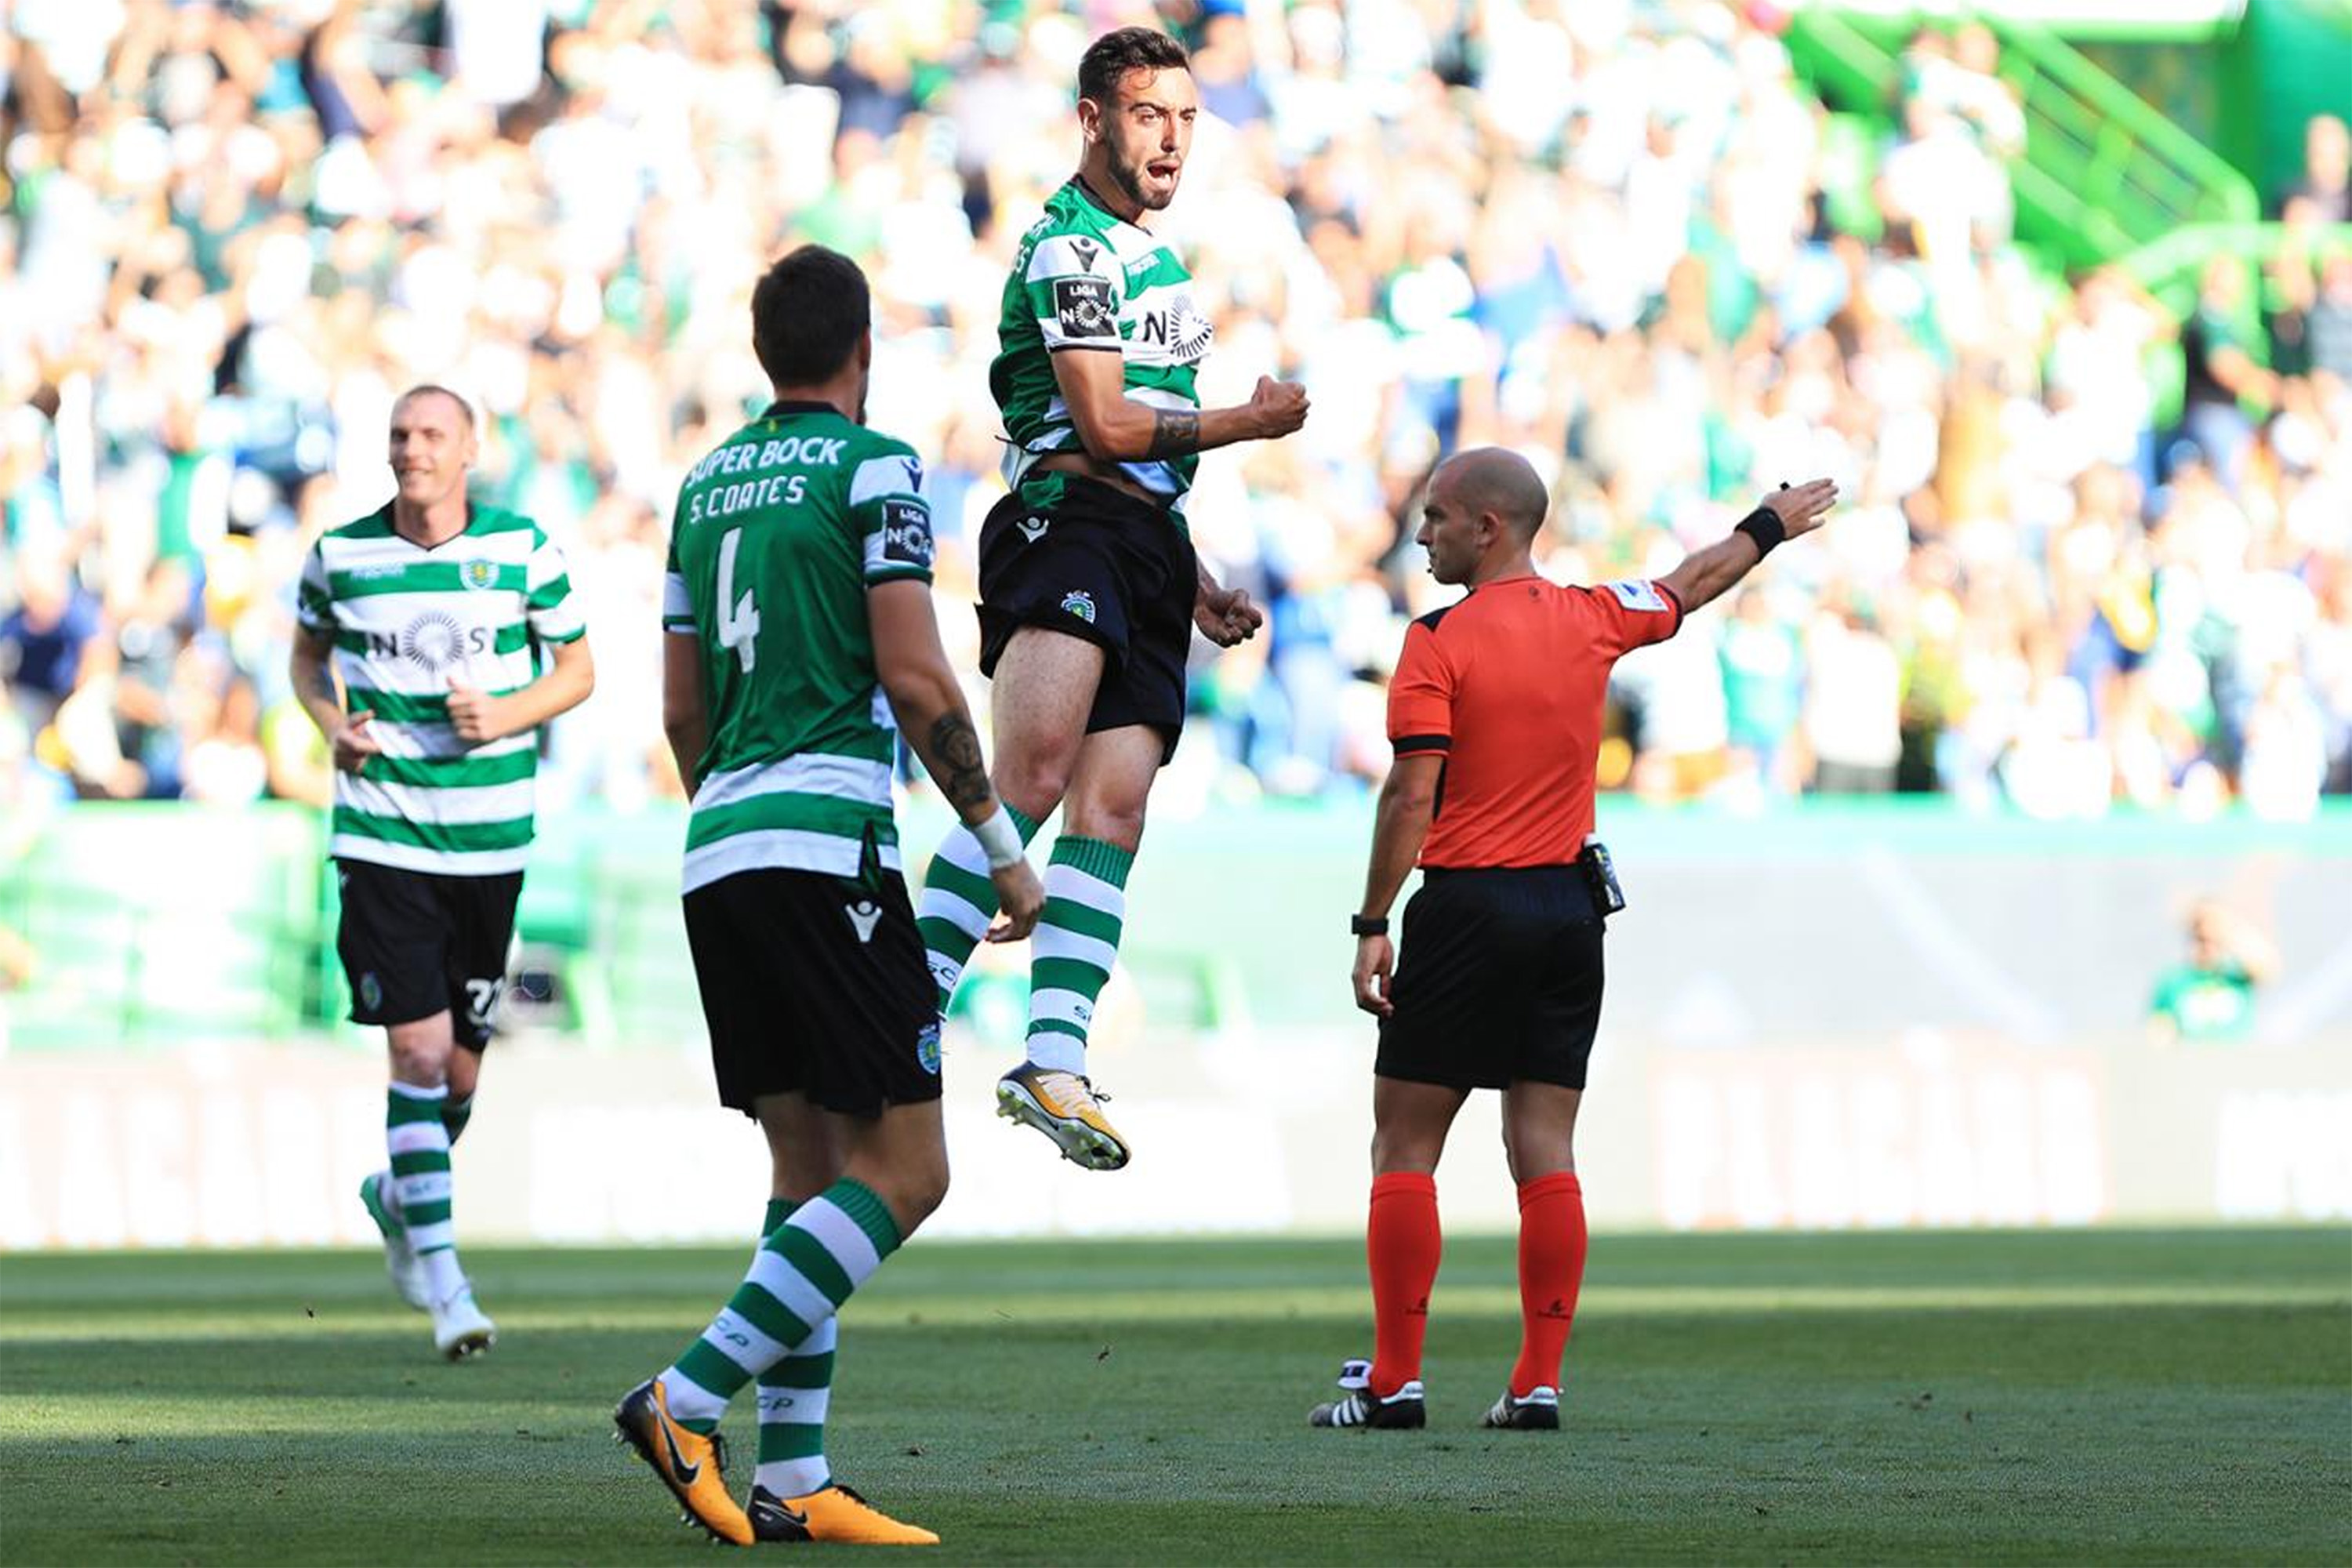 Em Portugal, árbitro de vídeo anula 2 gols nos acréscimos | VEJA